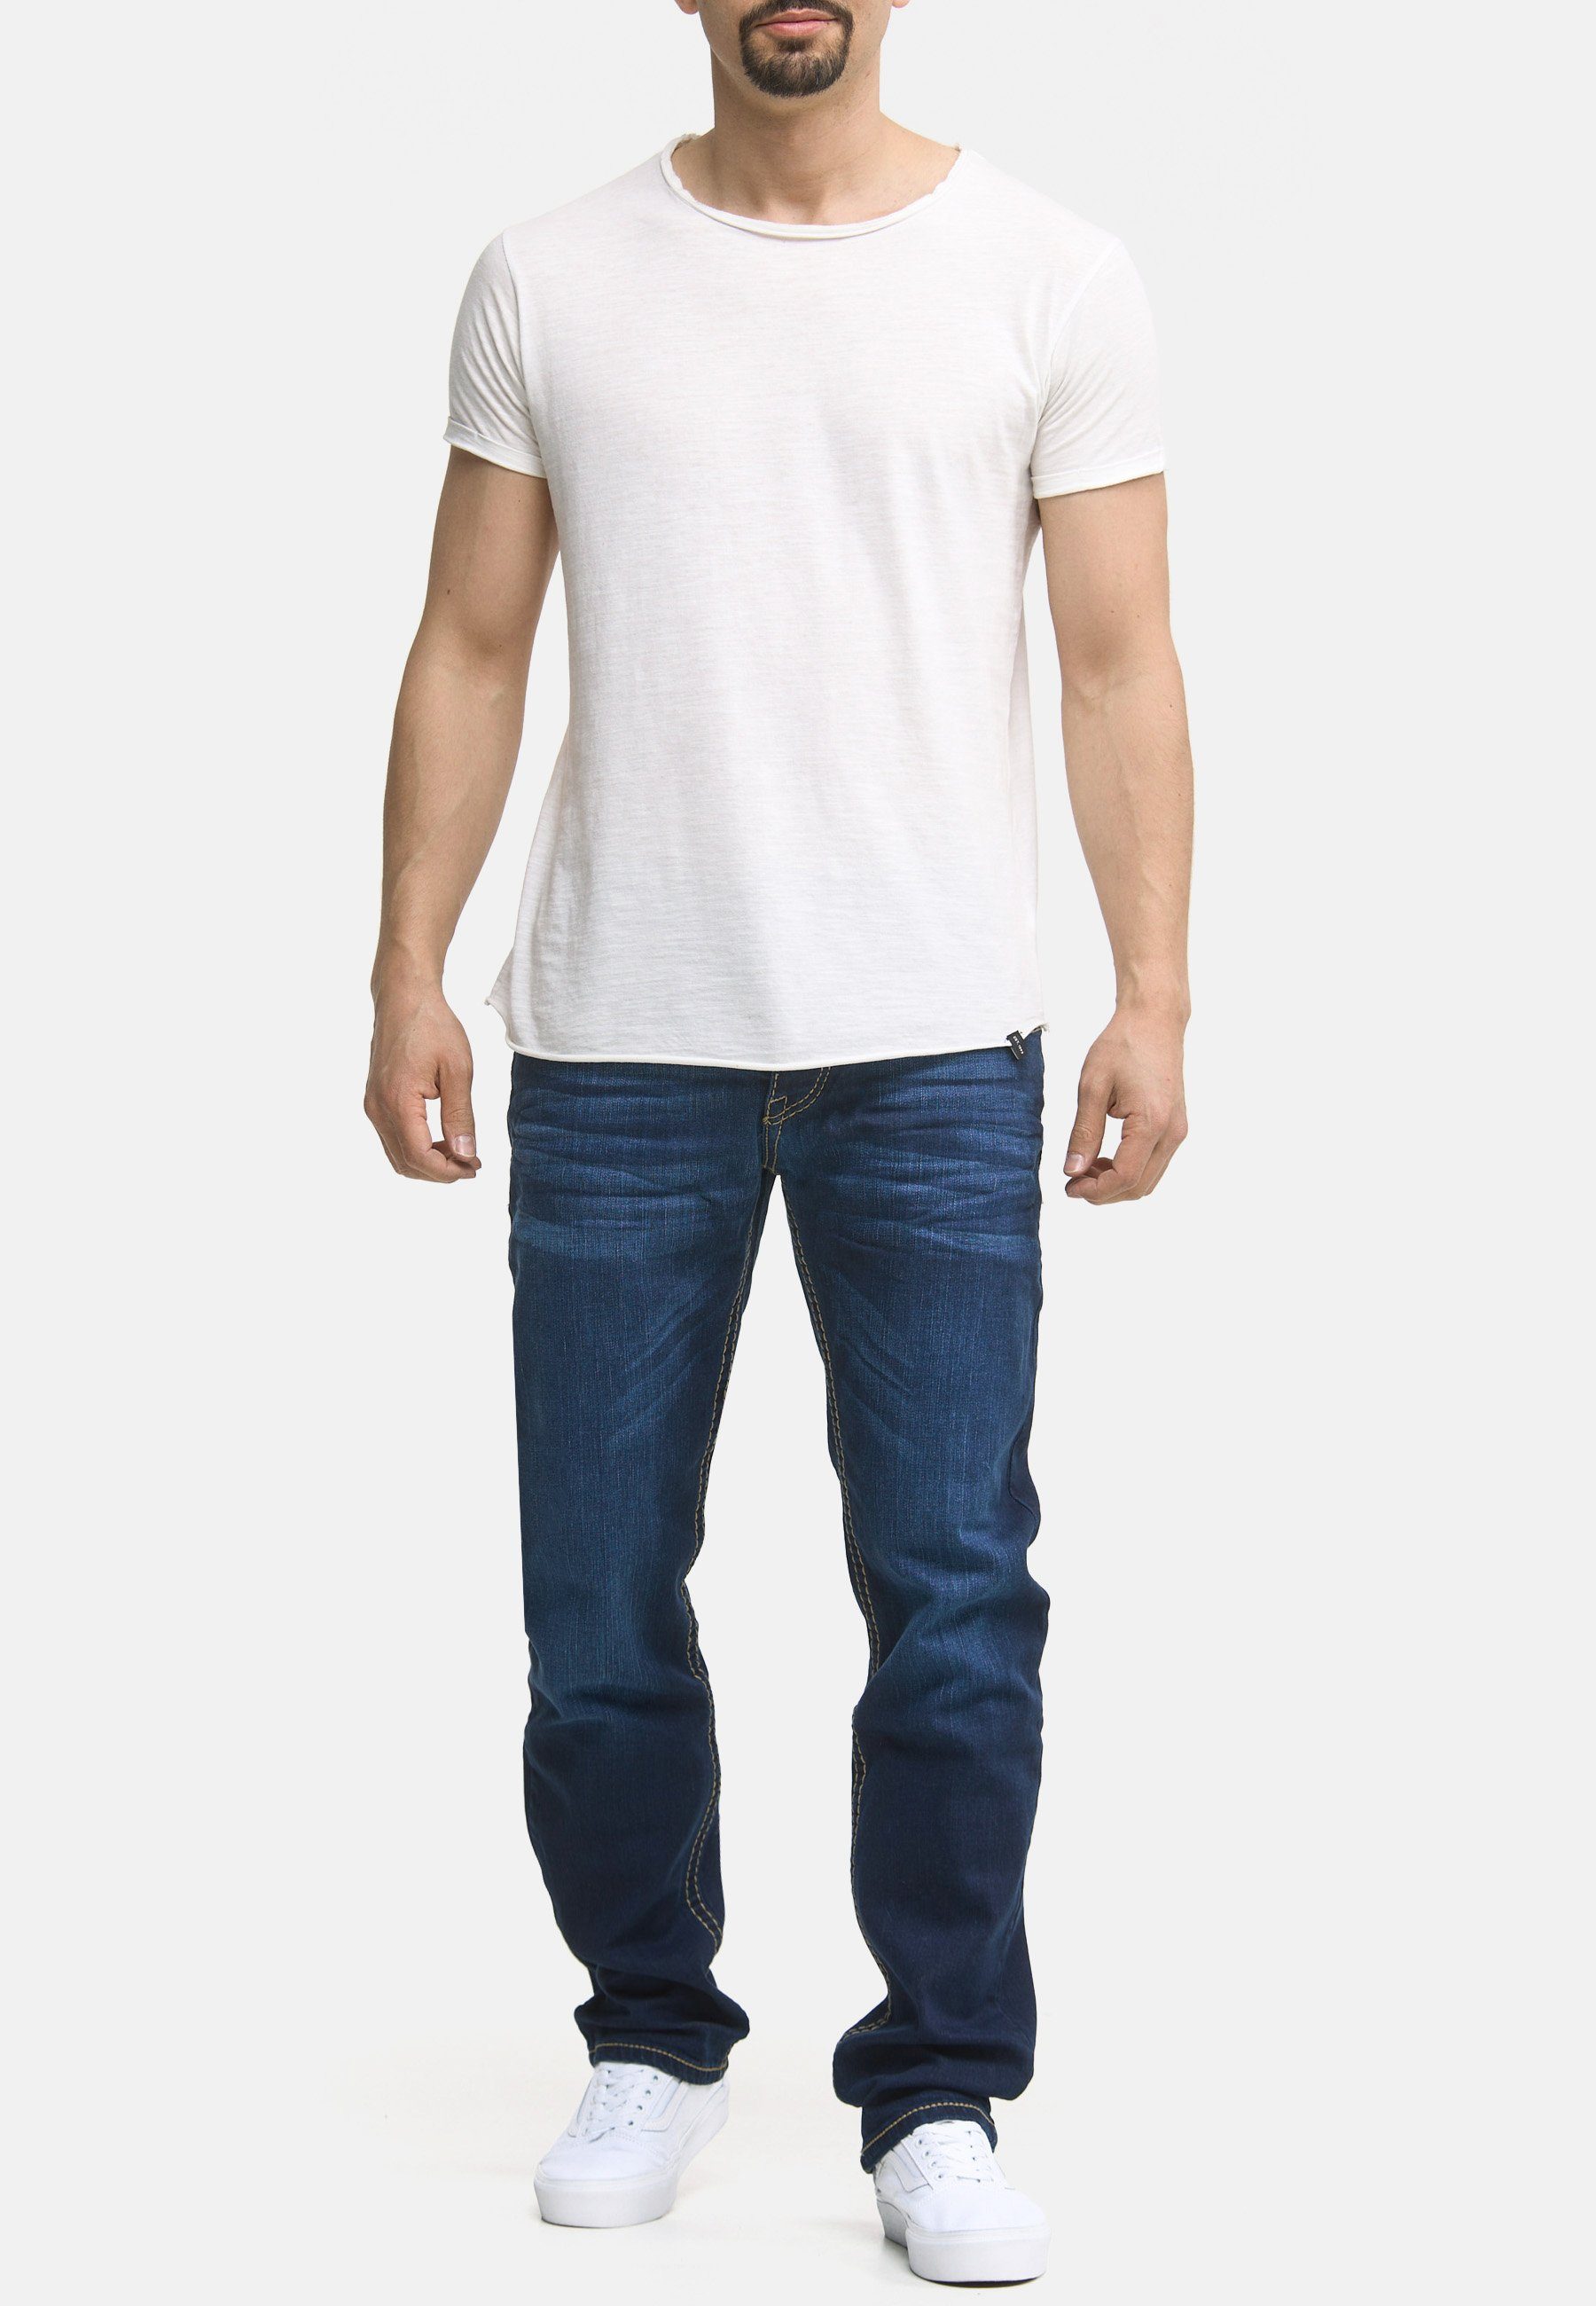 Code47 Code47 Hose Männer Jeans Herren Five Bootcut Regular-fit-Jeans Denim Pocket Regular Fit